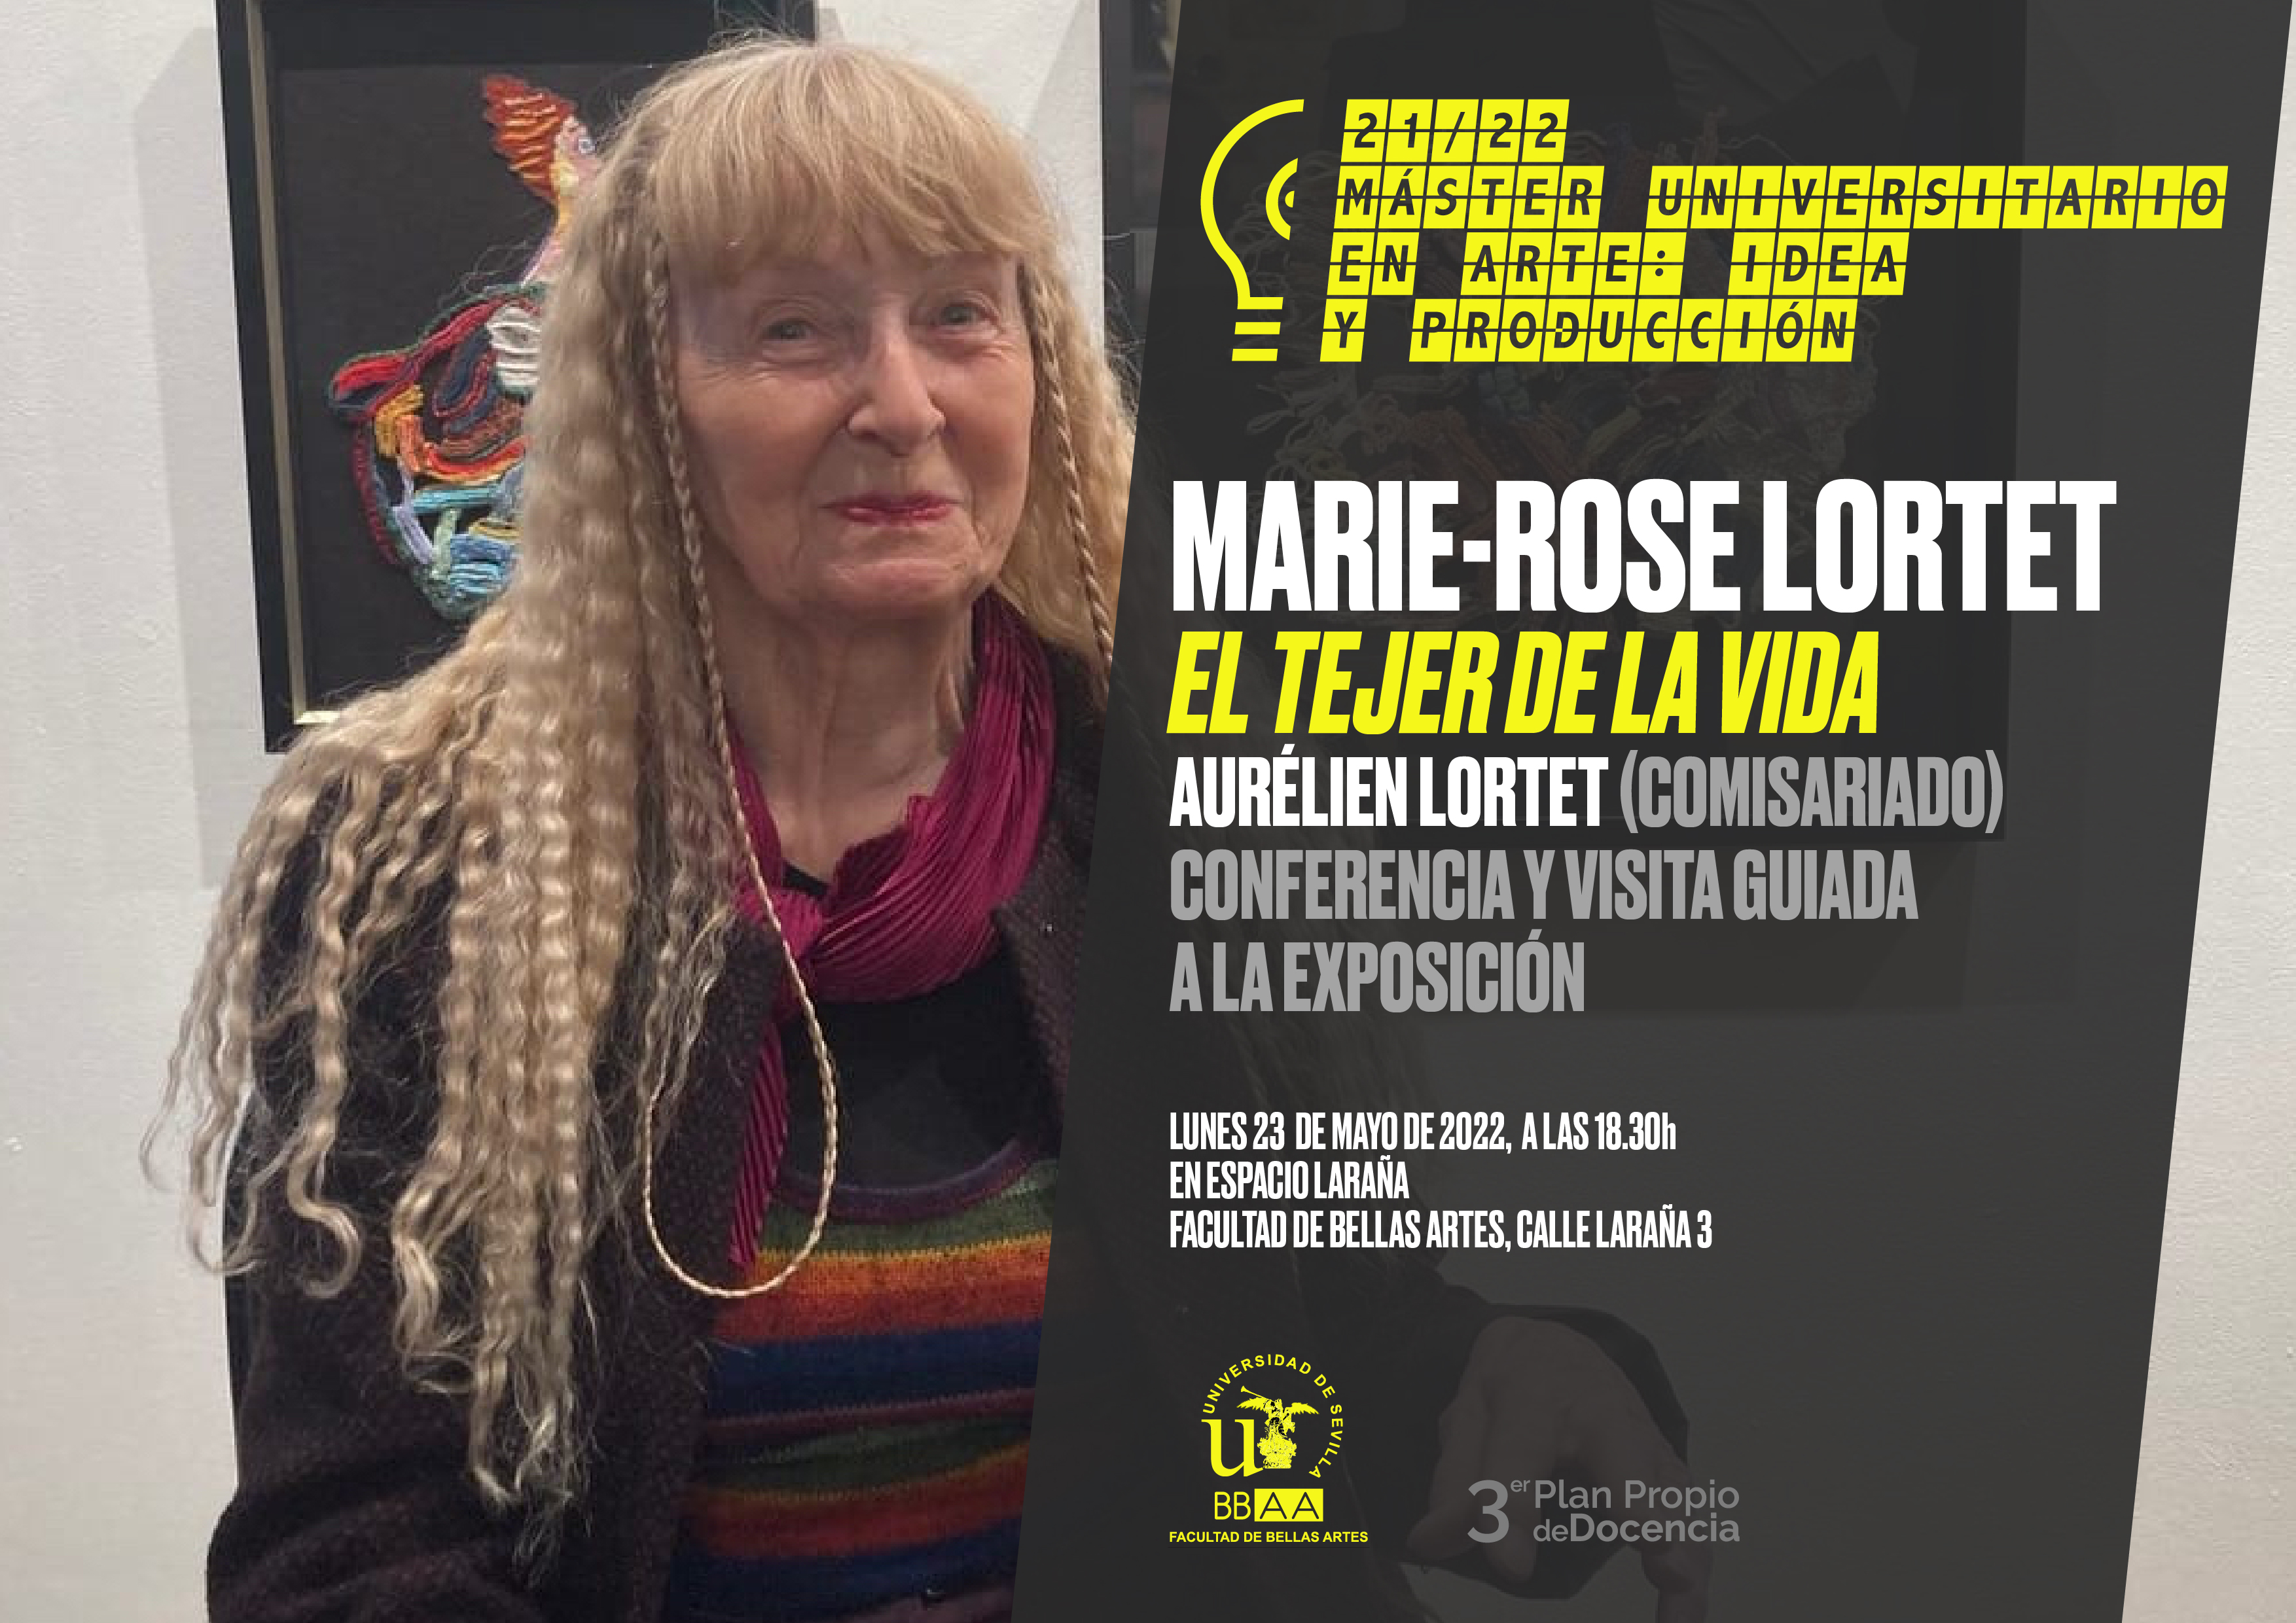 conferencia de la artista Marie-Rose Lortet sobre 'El Tejer de la Vida'